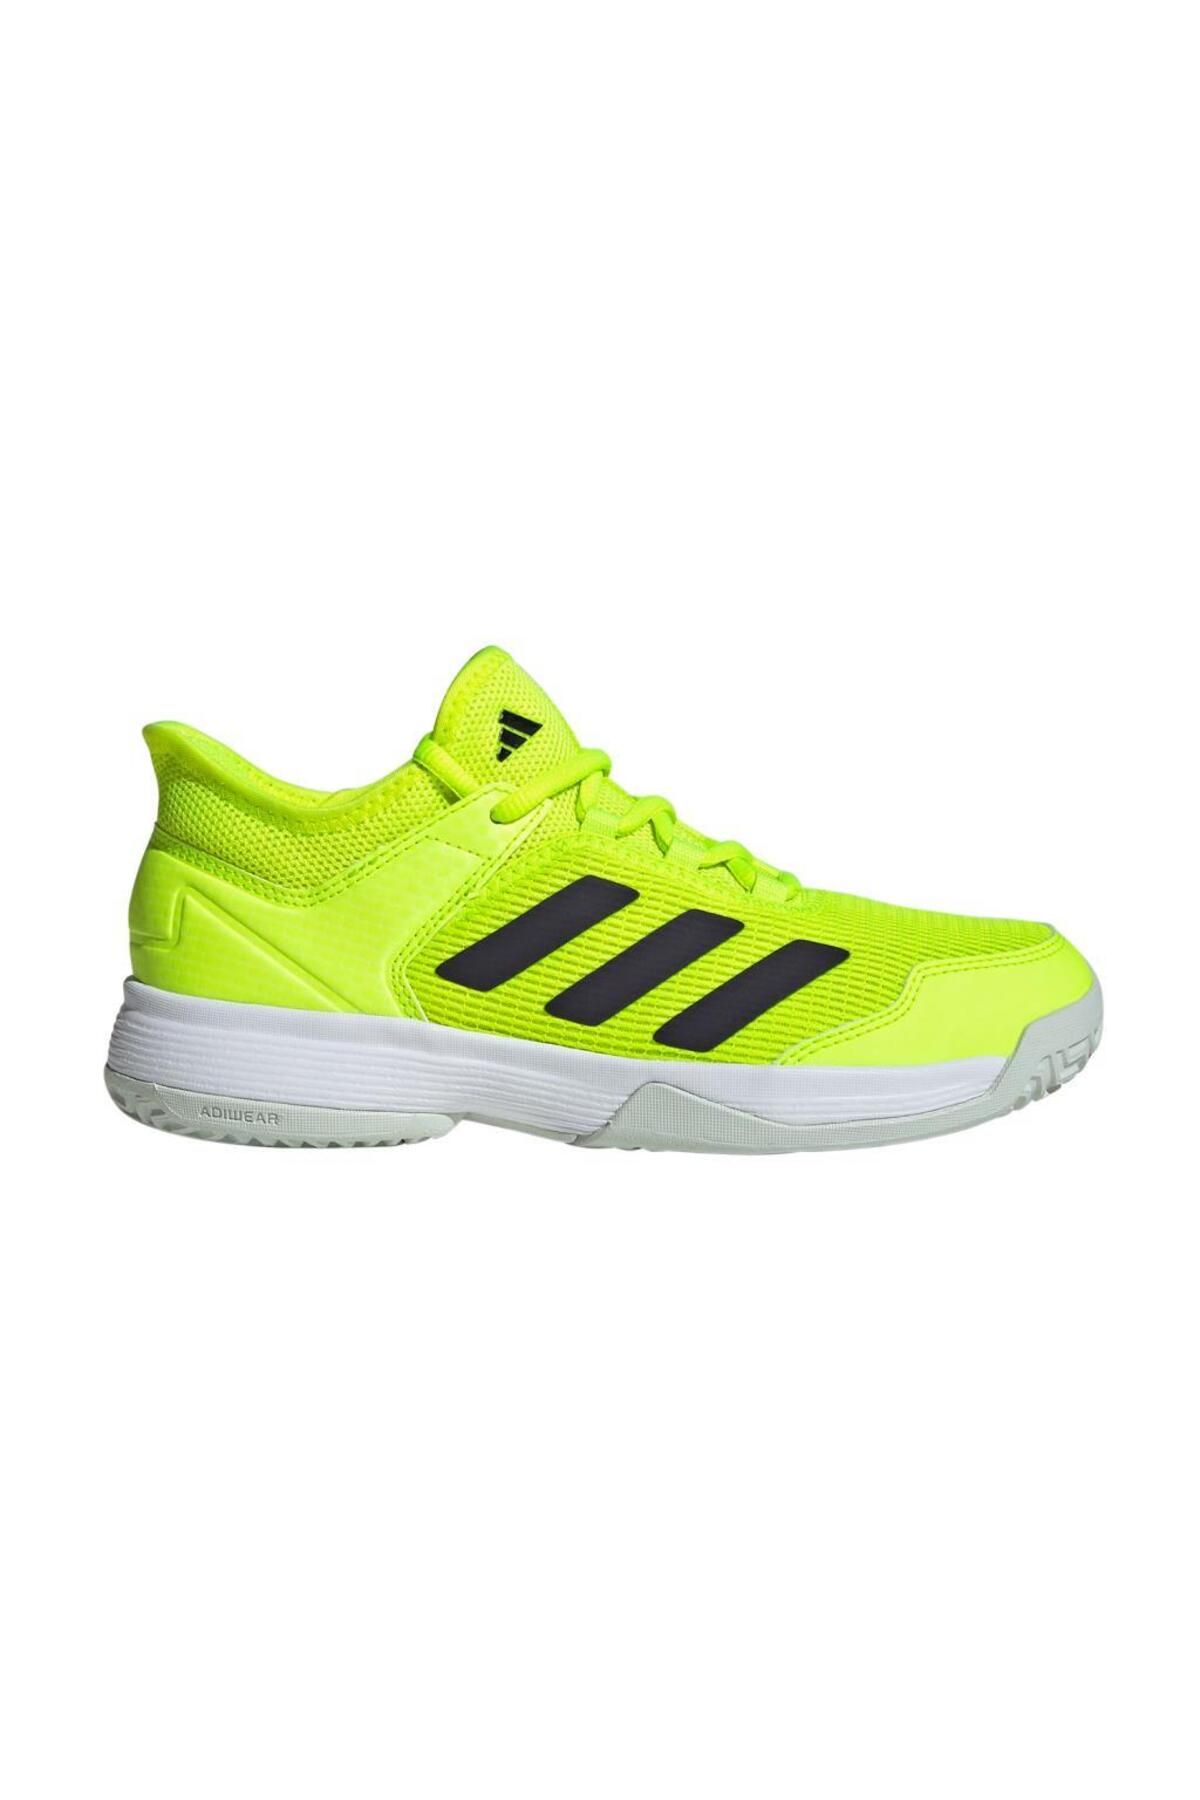 adidas Ubersonic 4 IF0442 Yeşil Çocuk All Court Tenis Ayakkabısı